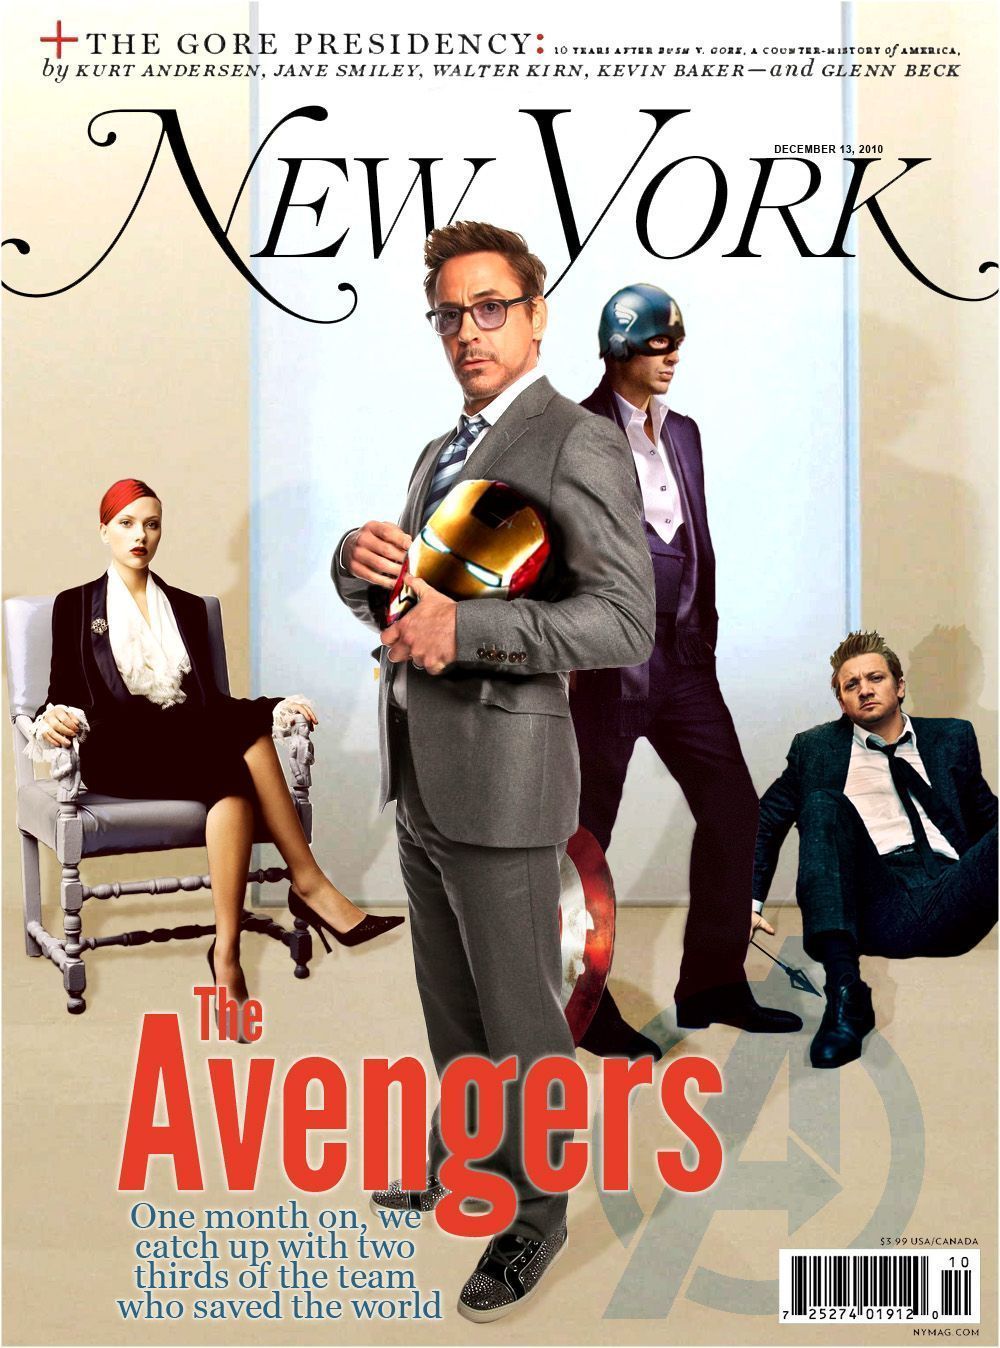 Les Avengers s'affichent dans les journaux US #13